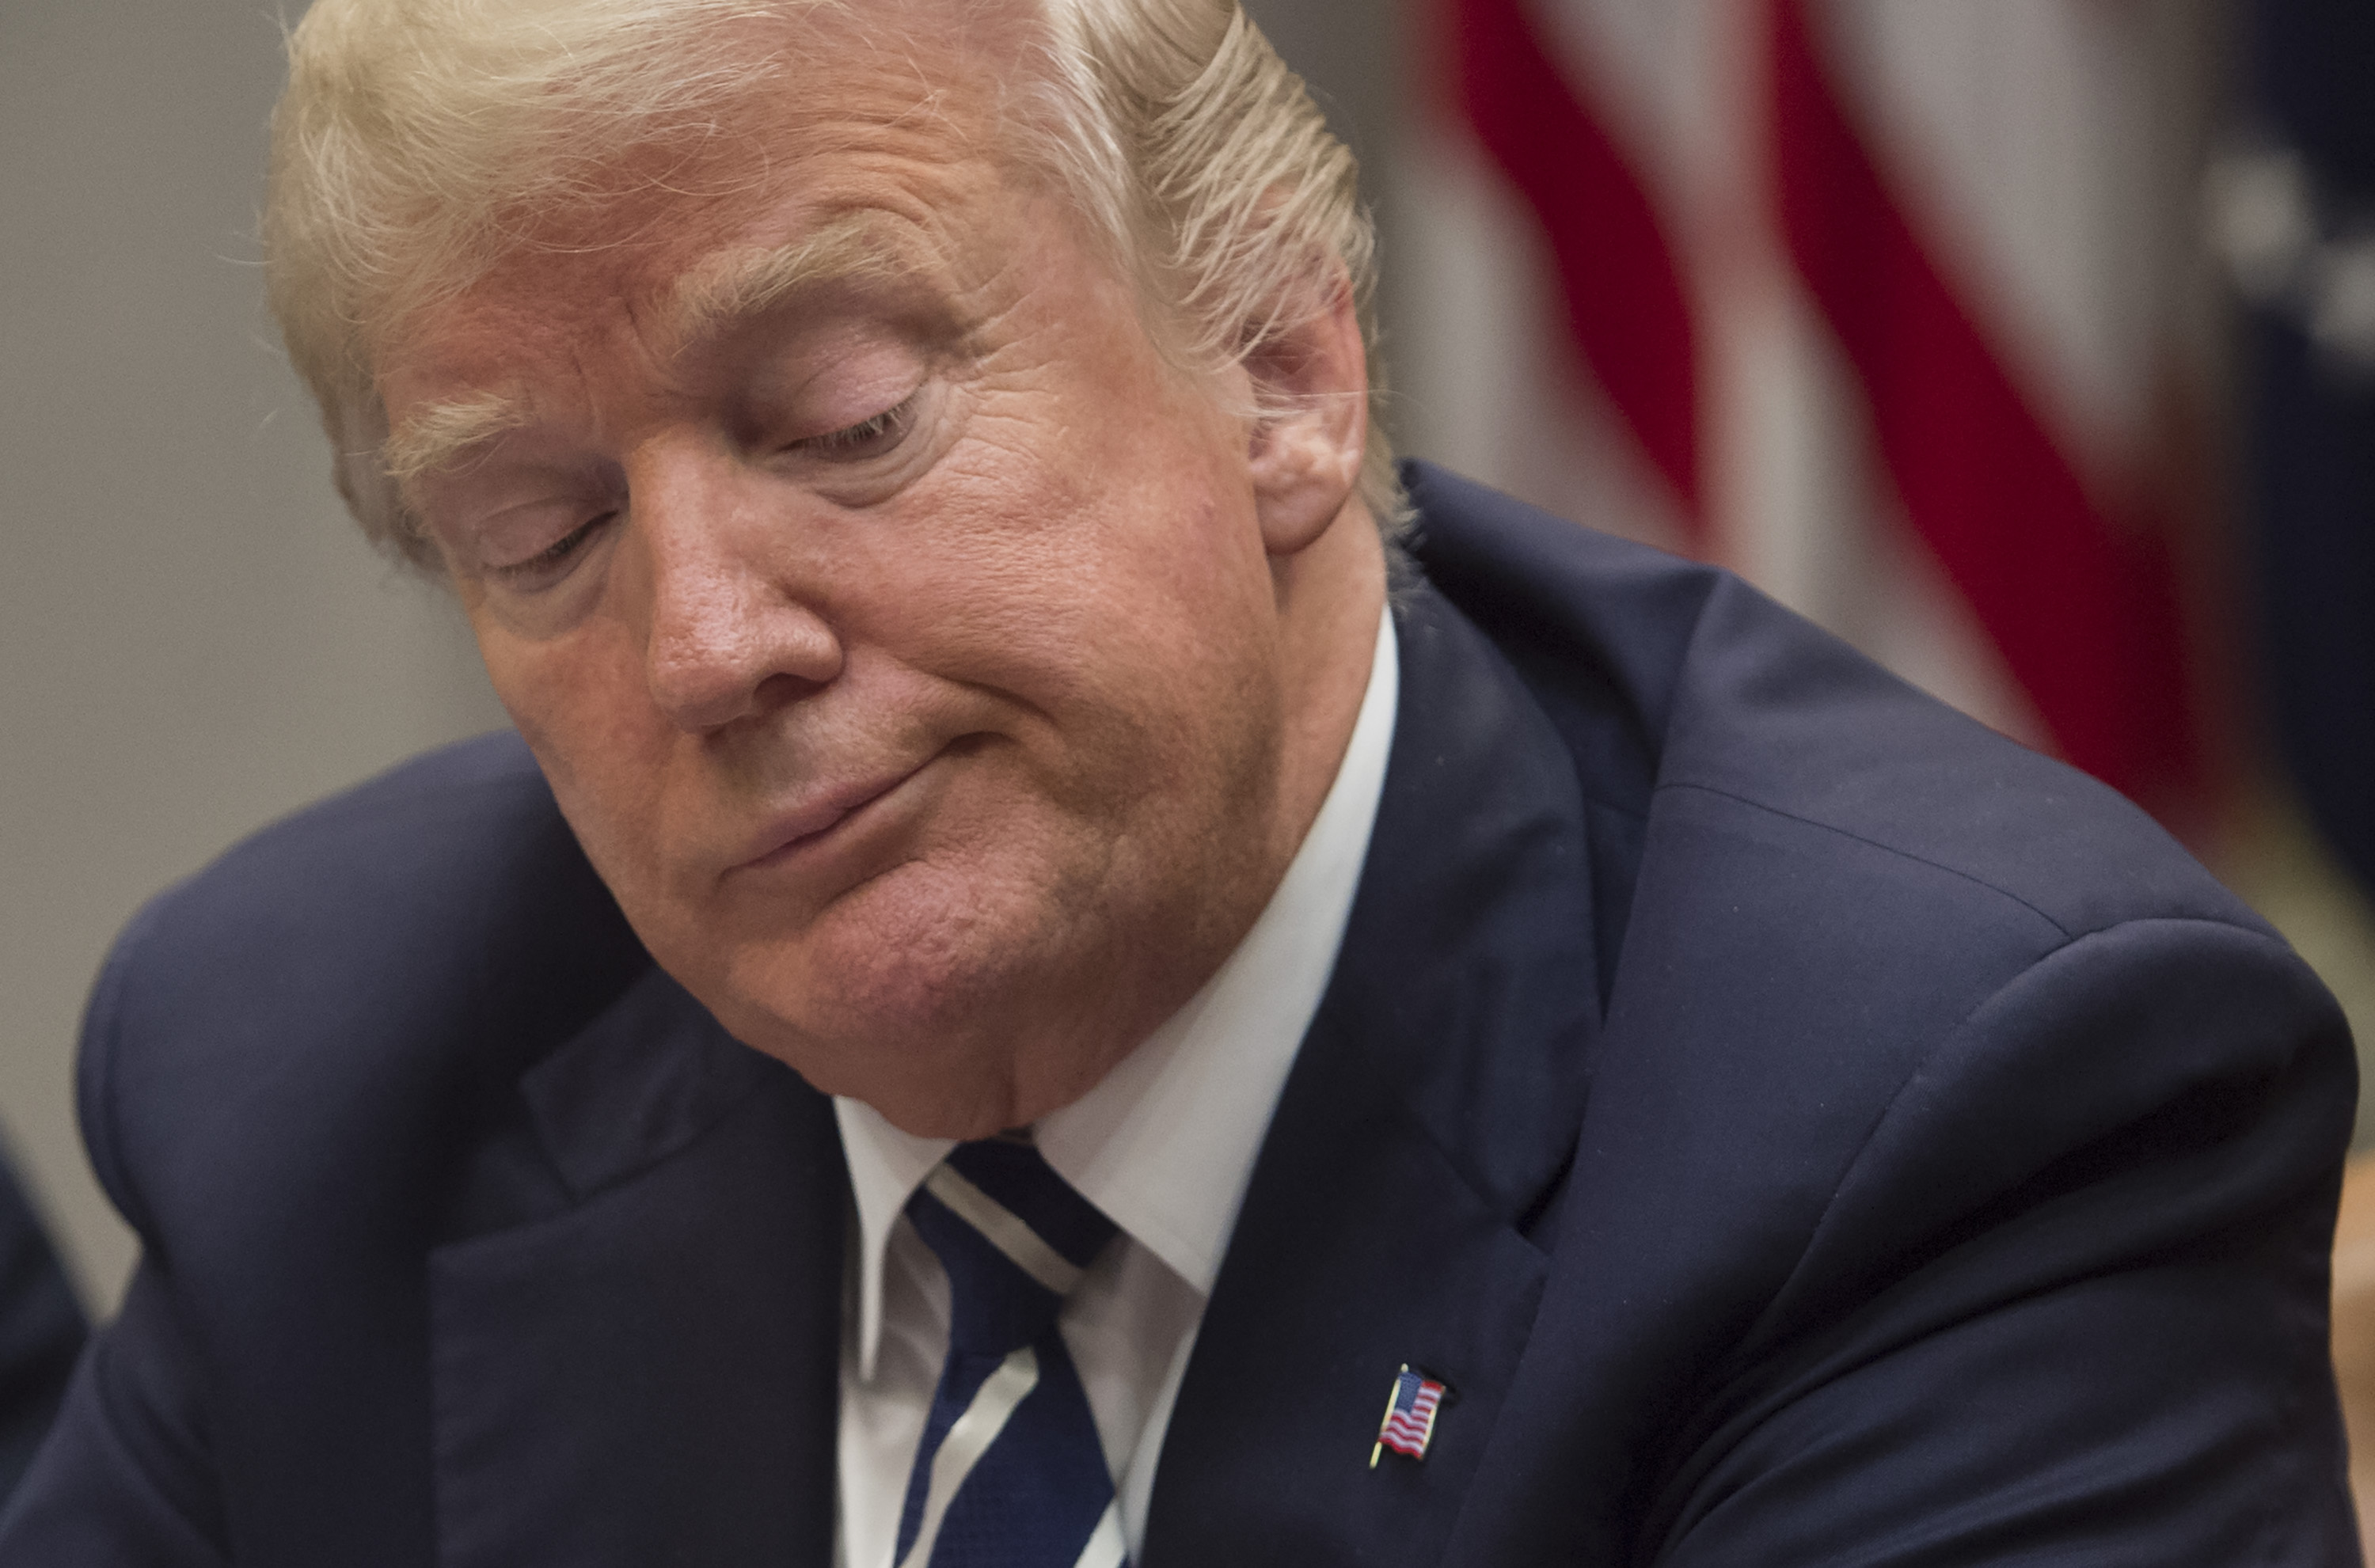 Trumpot a saját bírái sem támogatták, a leköszönő elnök Twitteren dühöng